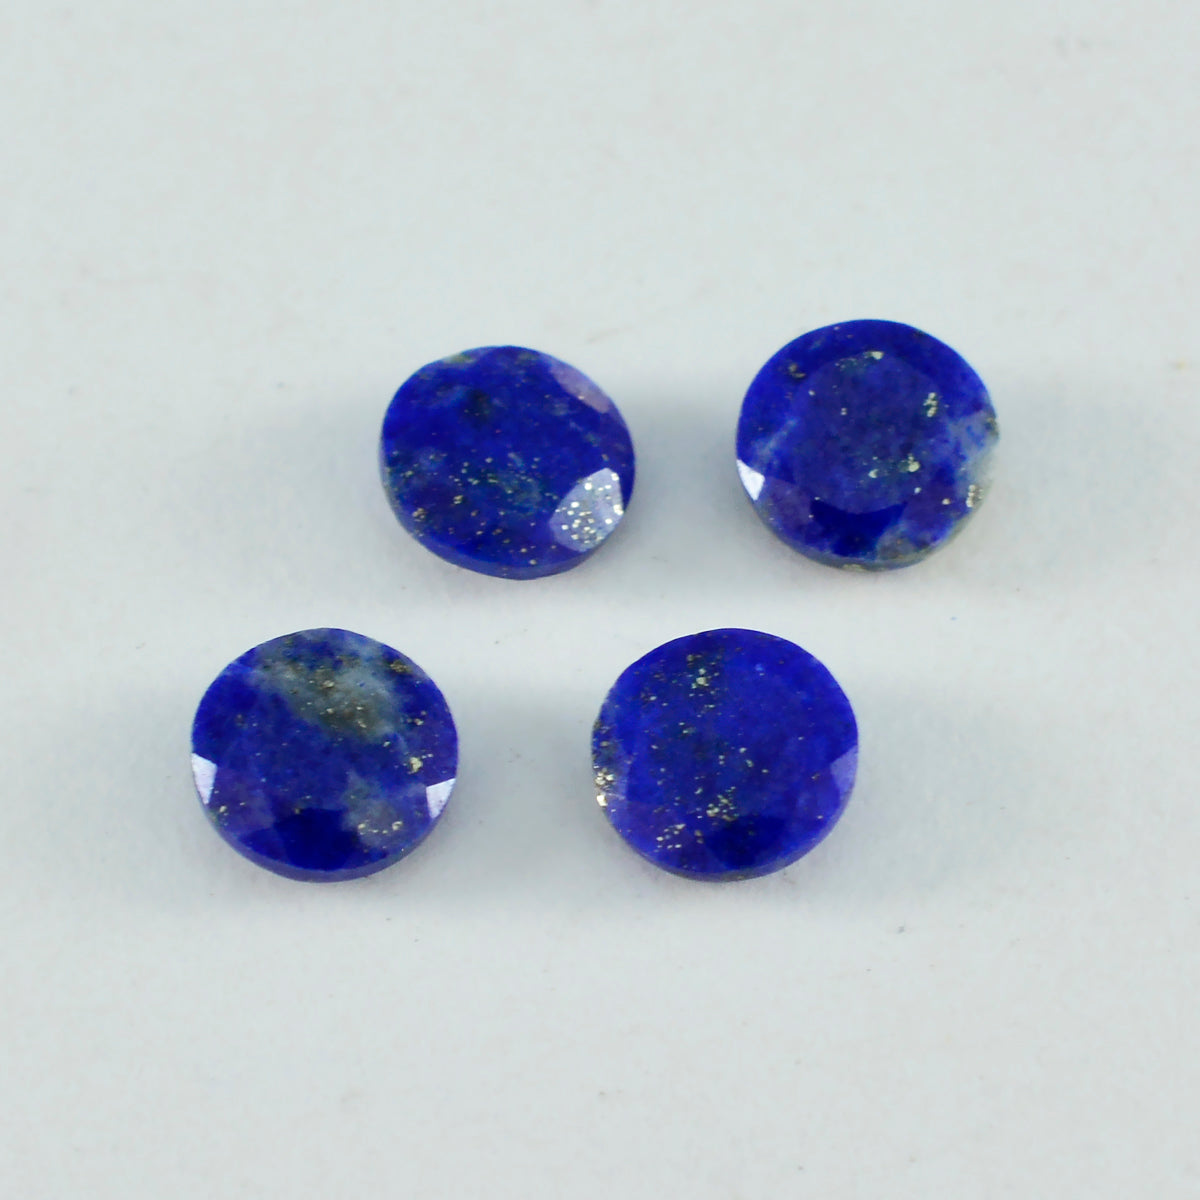 Riyogems 1PC Echte Blauwe Lapis Lazuli Facet 11x11 mm Ronde Vorm A1 Kwaliteit Edelsteen